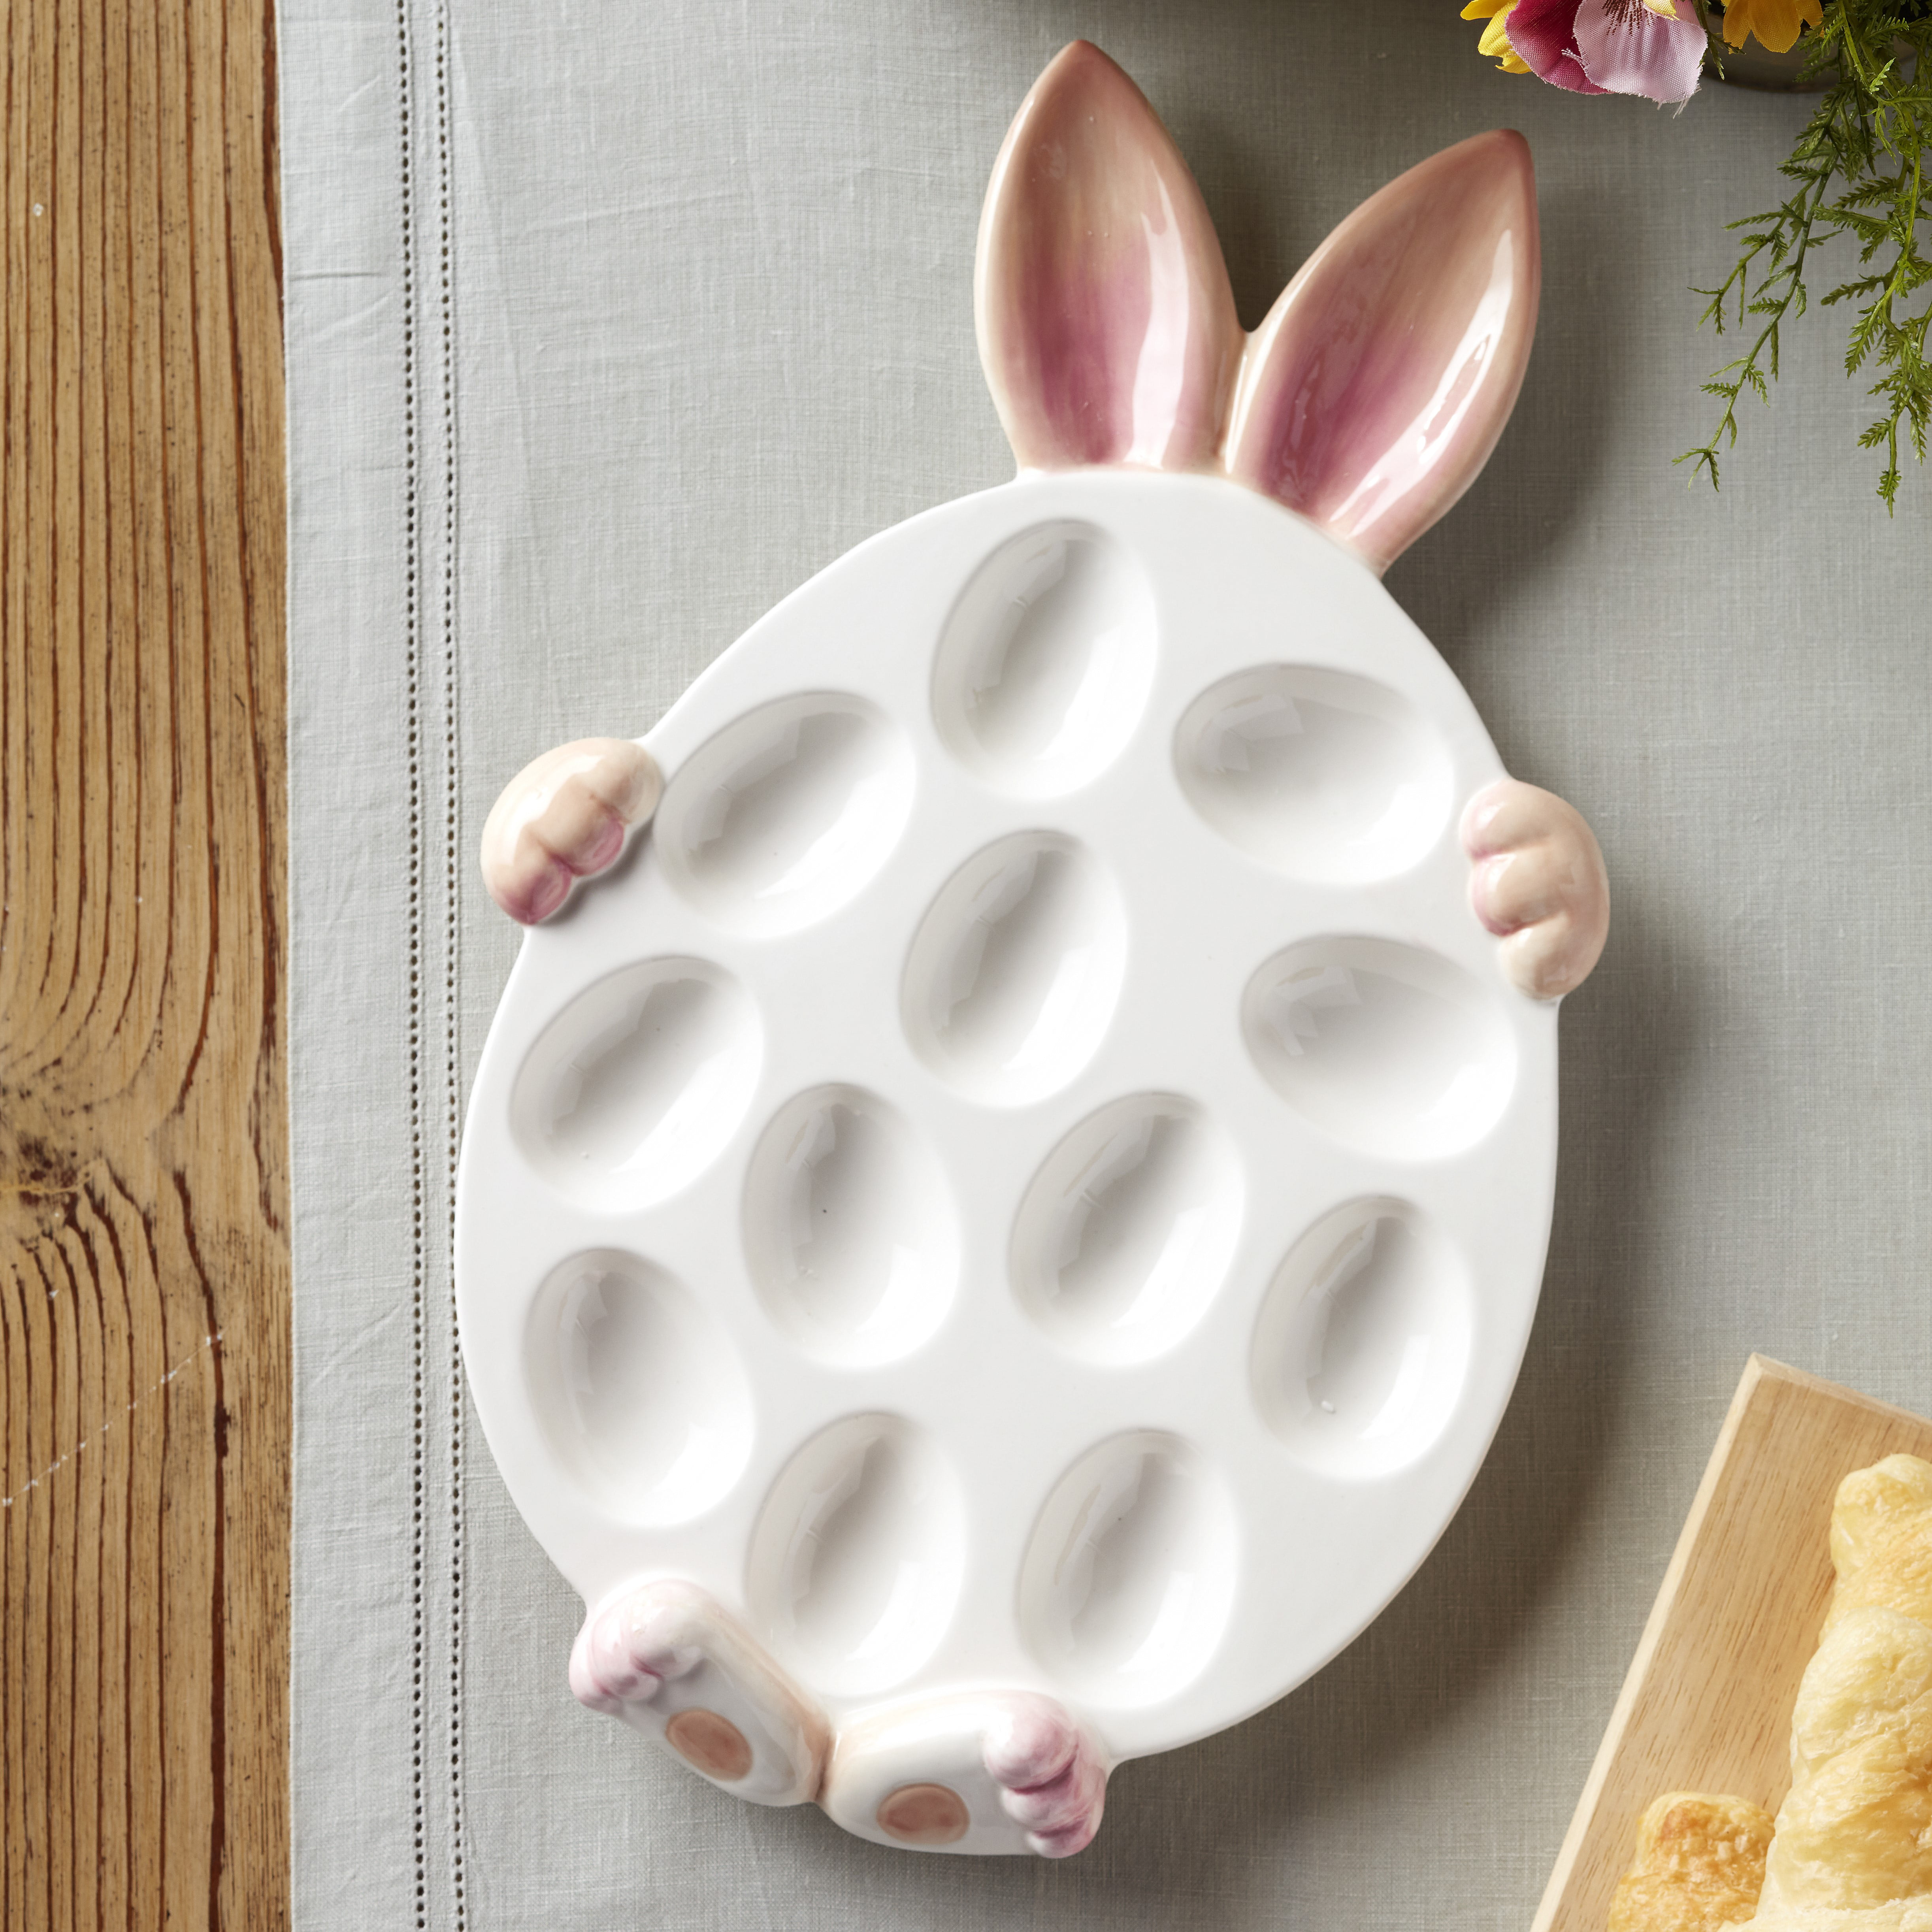 Happy Easter Pastel Pink Flower Design 12 x 10.5 Inch Ceramic Deviled Egg Serving Platter Dish